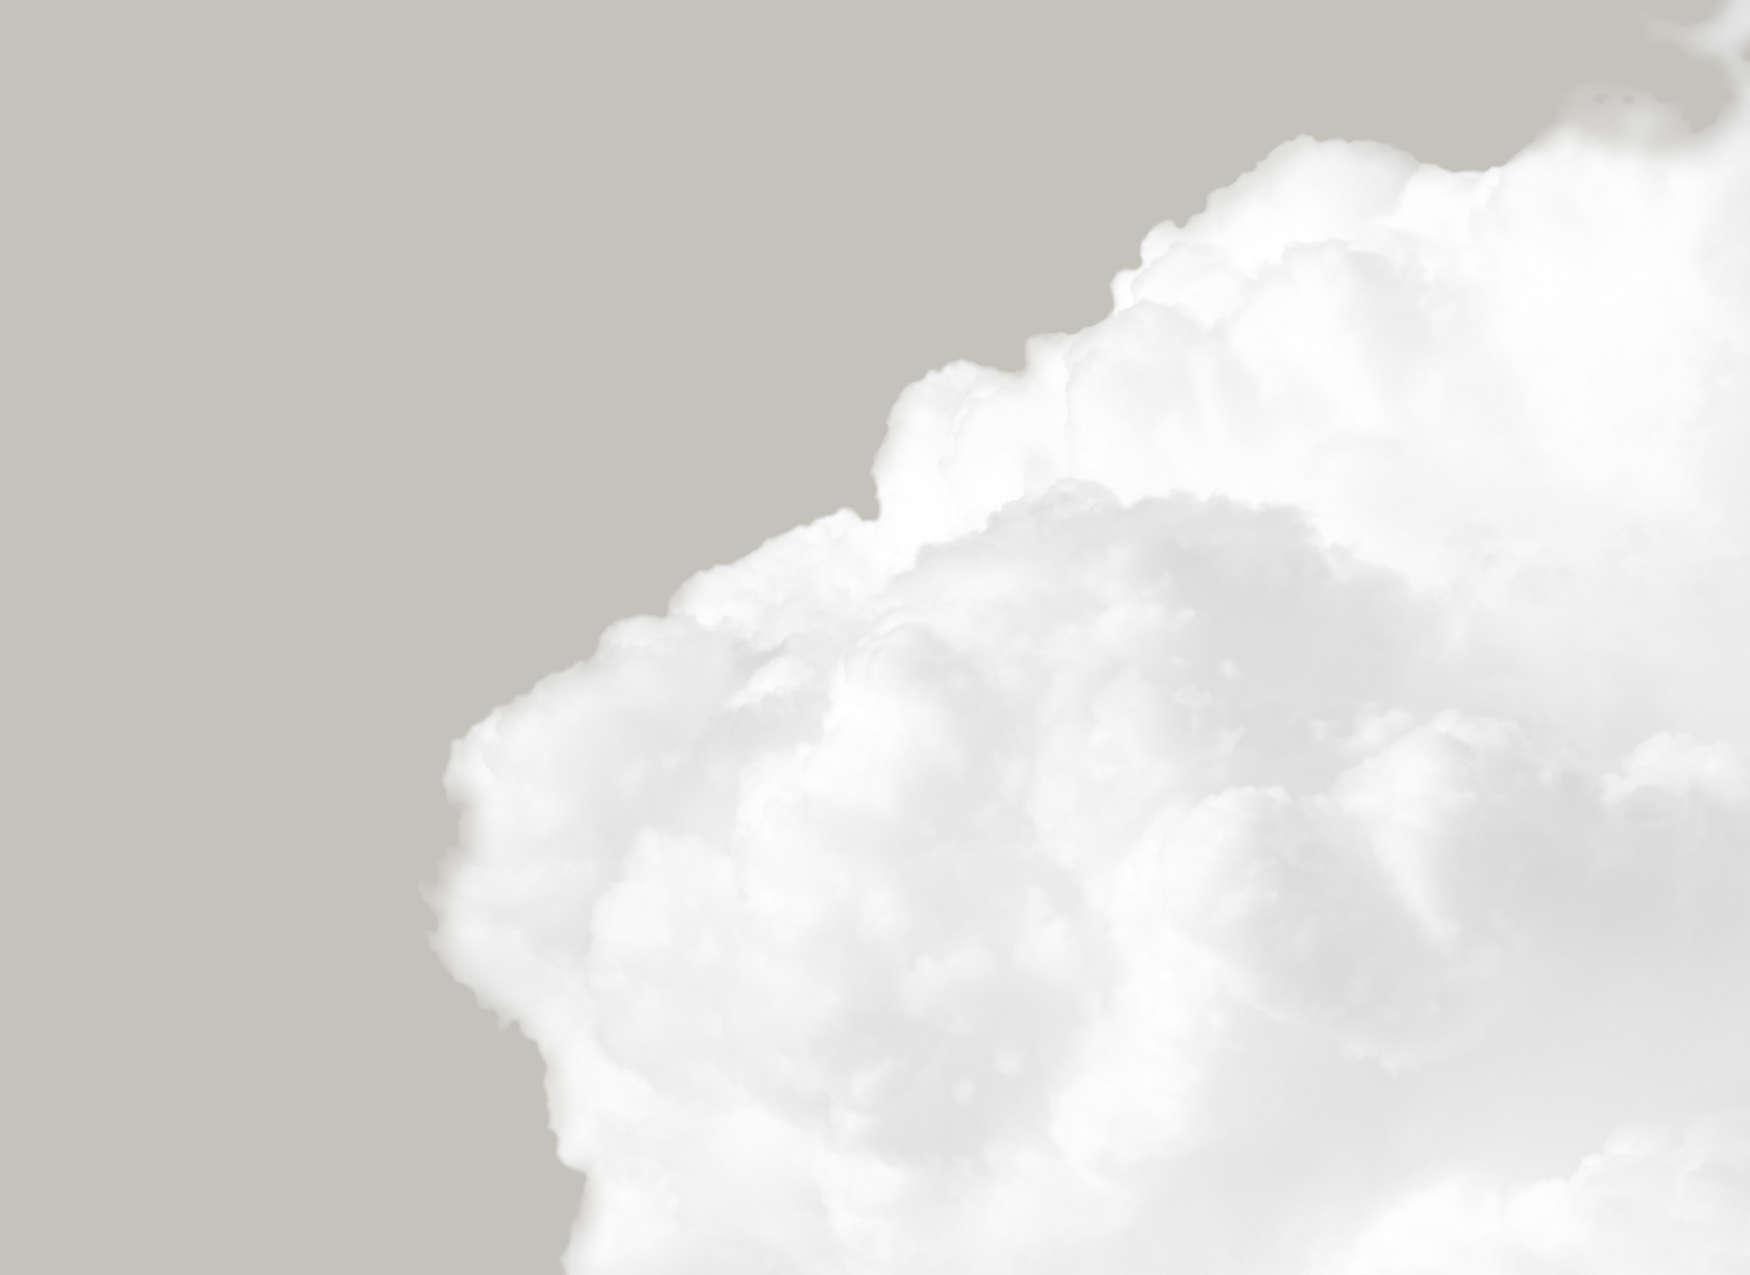             Mural de pared con nubes blancas en un cielo gris - Gris, Blanco
        